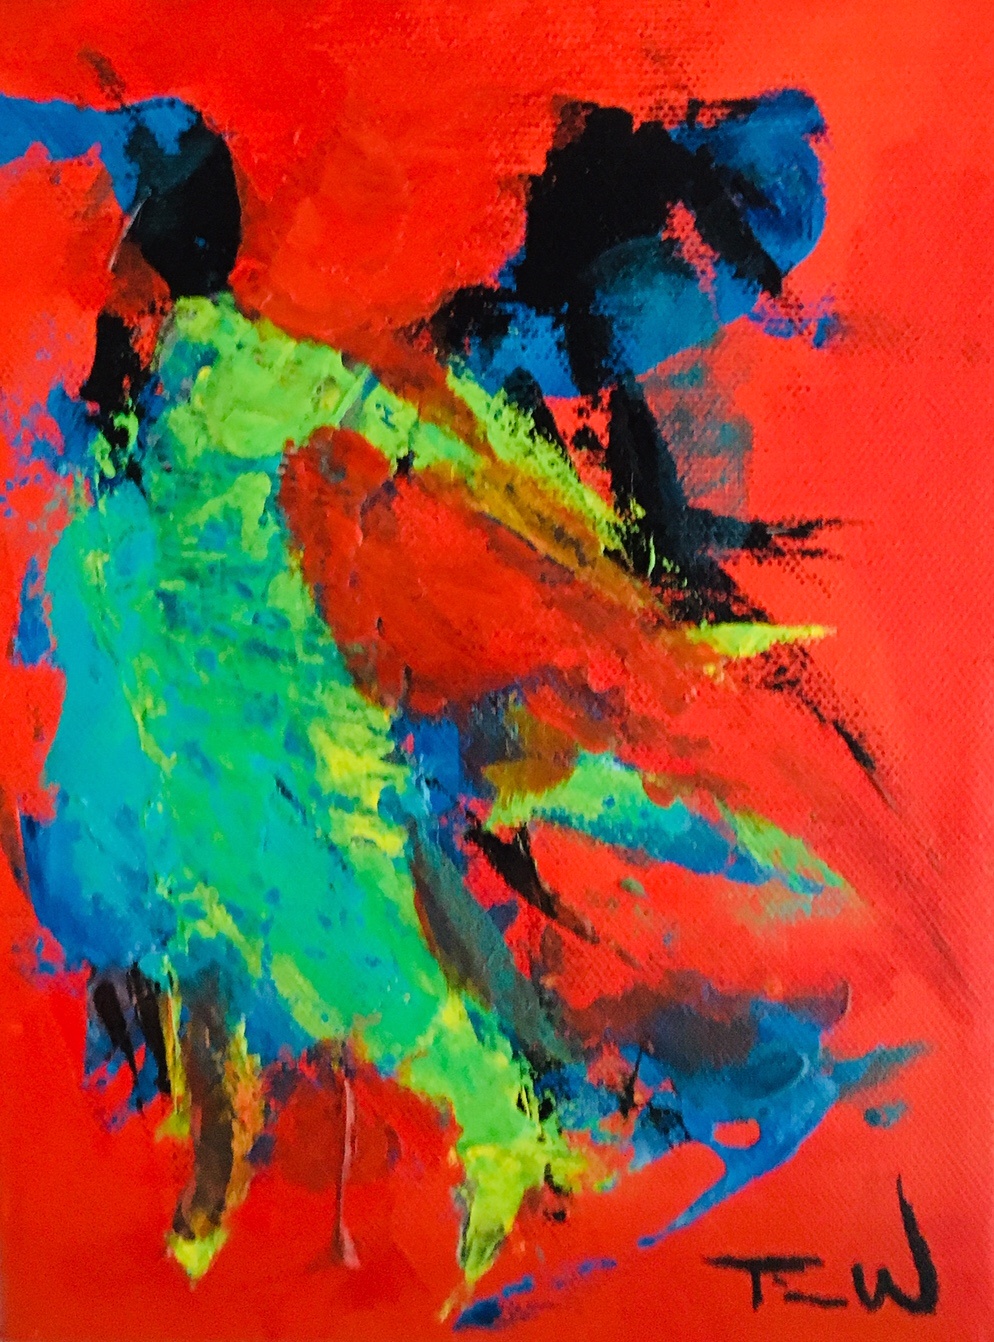 Lille farverigt maleri med grøn, rød og blå. Abstrakt maleri - og alligevel ser jeg en kvinde i dans.